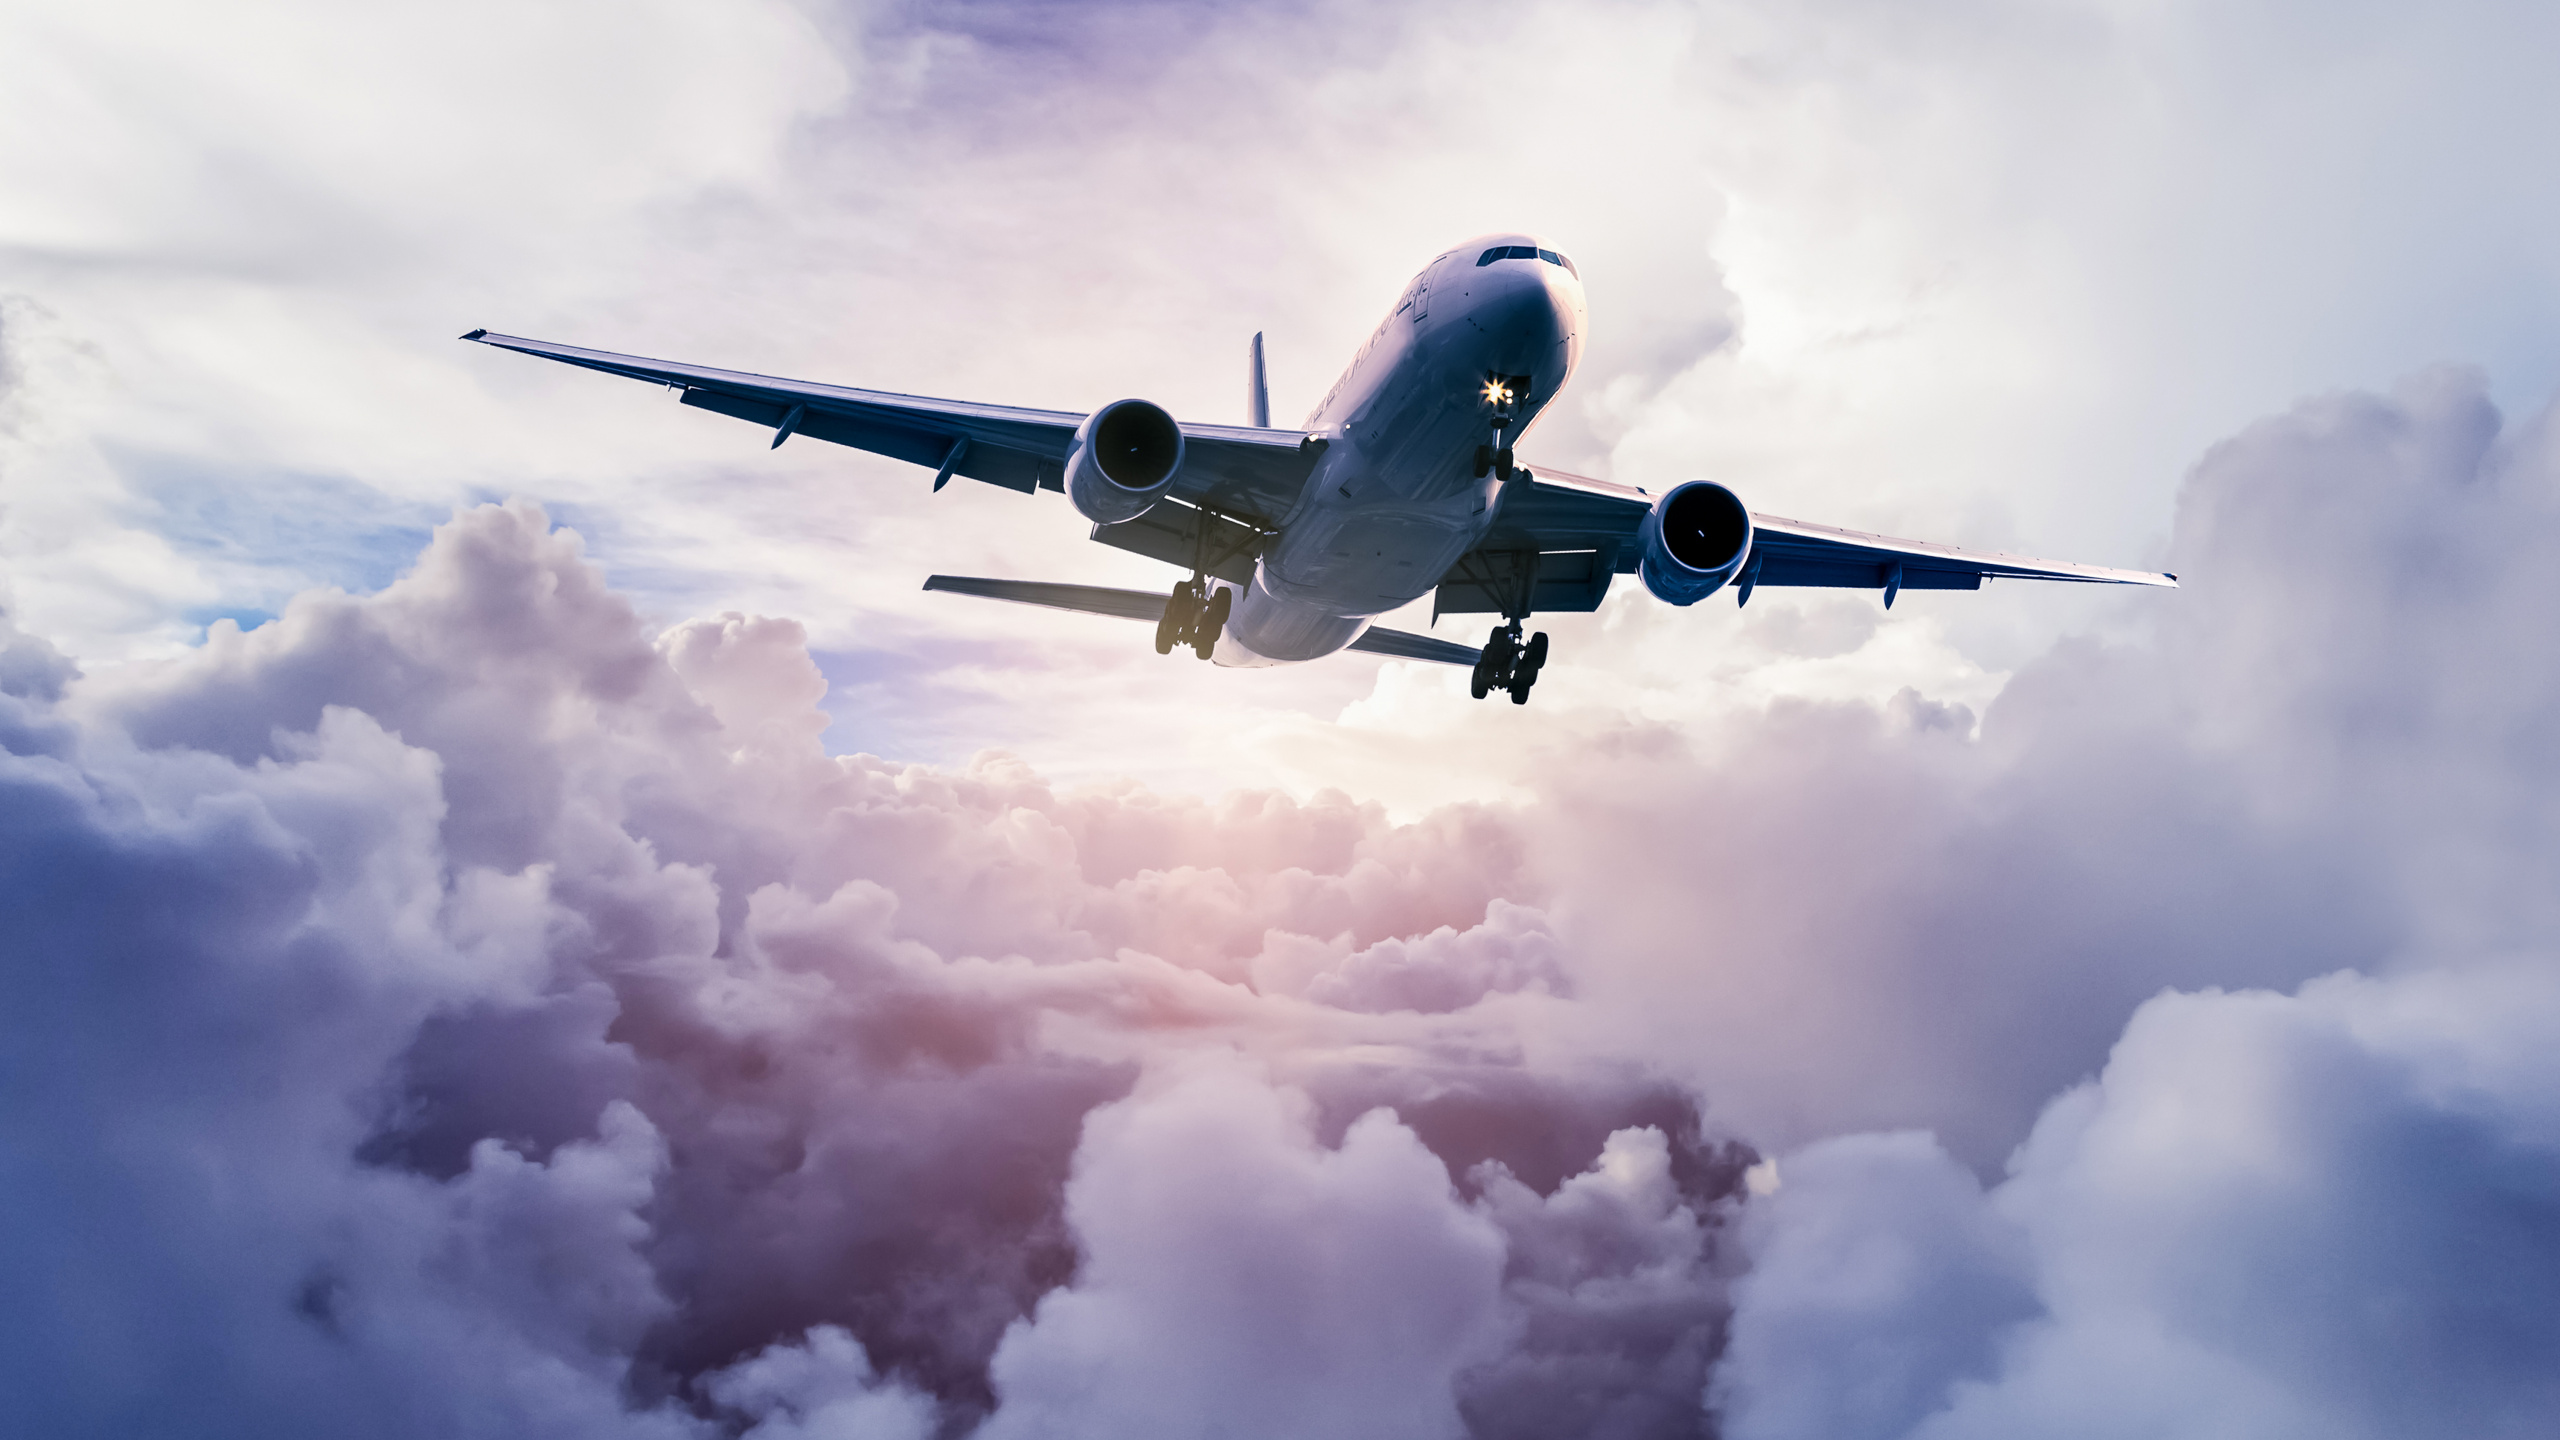 航班, 客机, 航空, 空中旅行, 航空公司 壁纸 2560x1440 允许